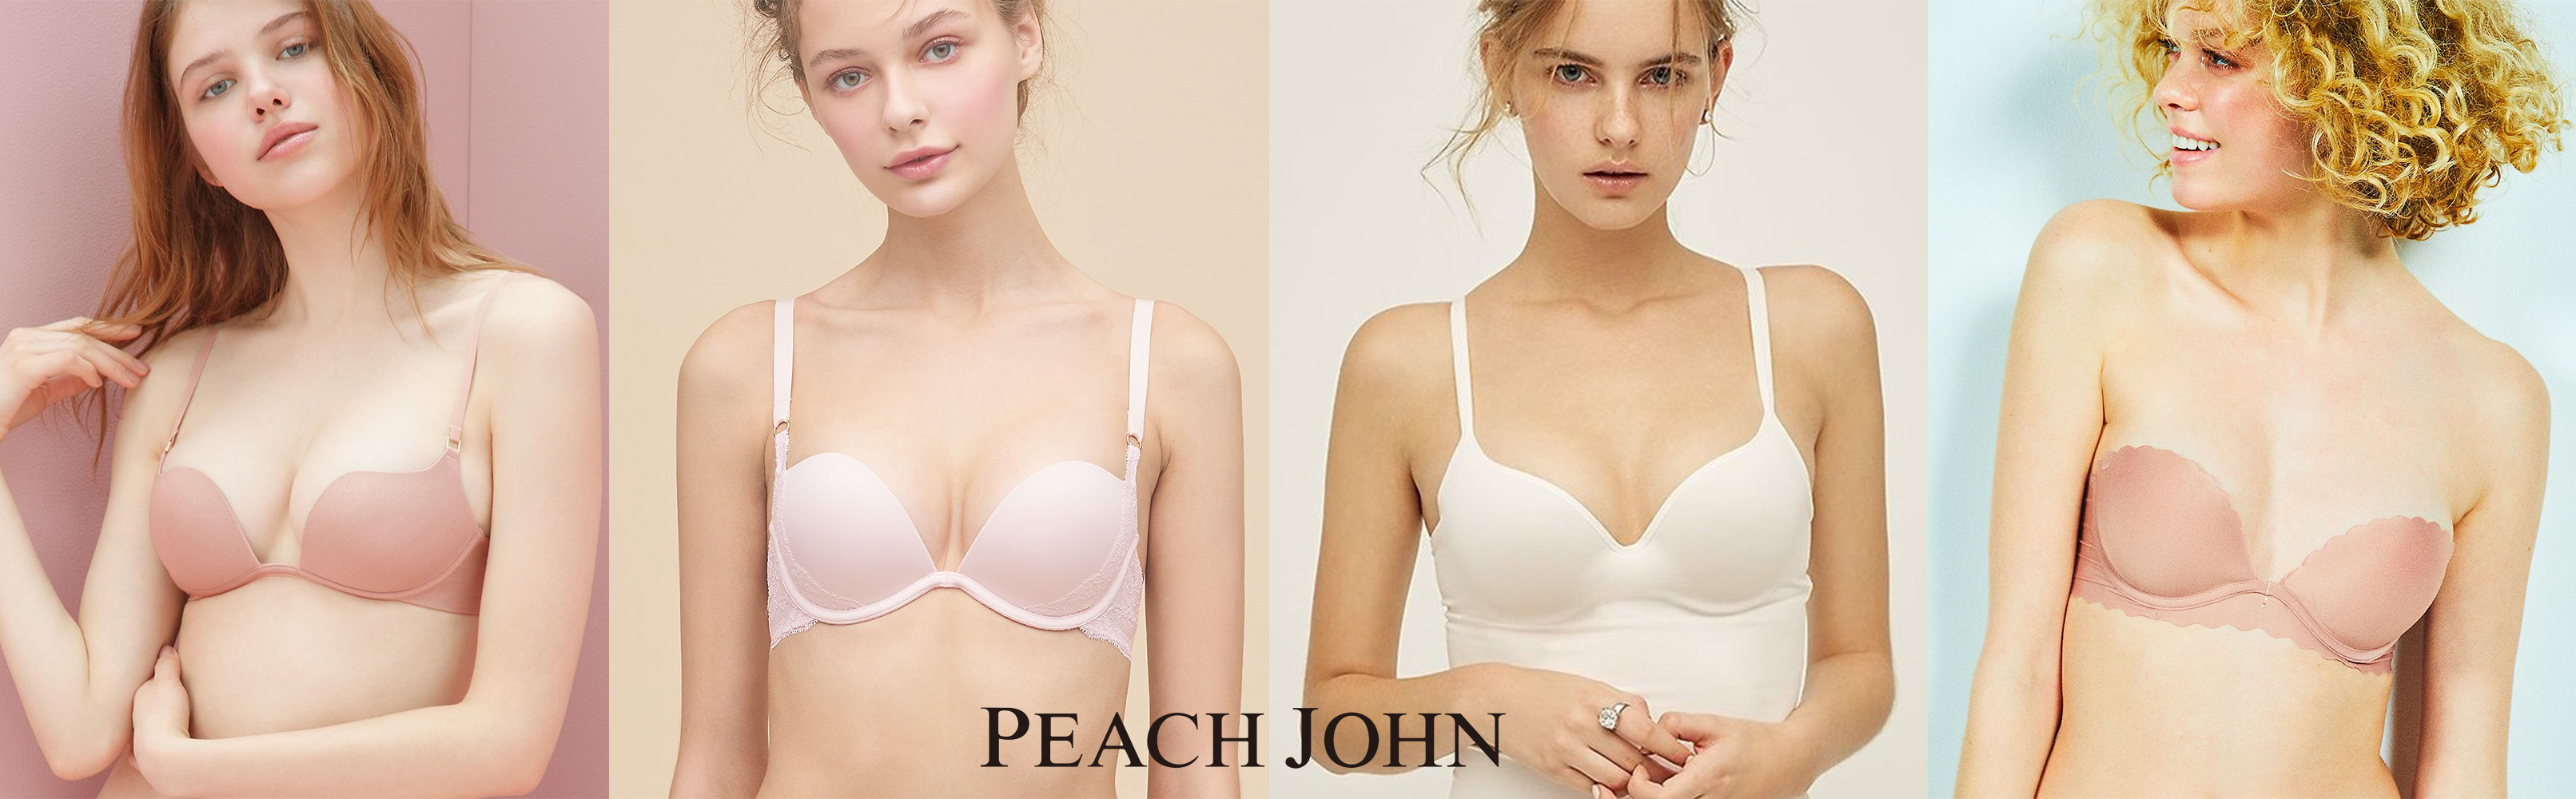 夏のブラ ベージュやピンクを選んで安心していない Peach Johnが 薄着に合わせるブラ選び の新三原則を提案 株式会社ピーチ ジョン のプレスリリース